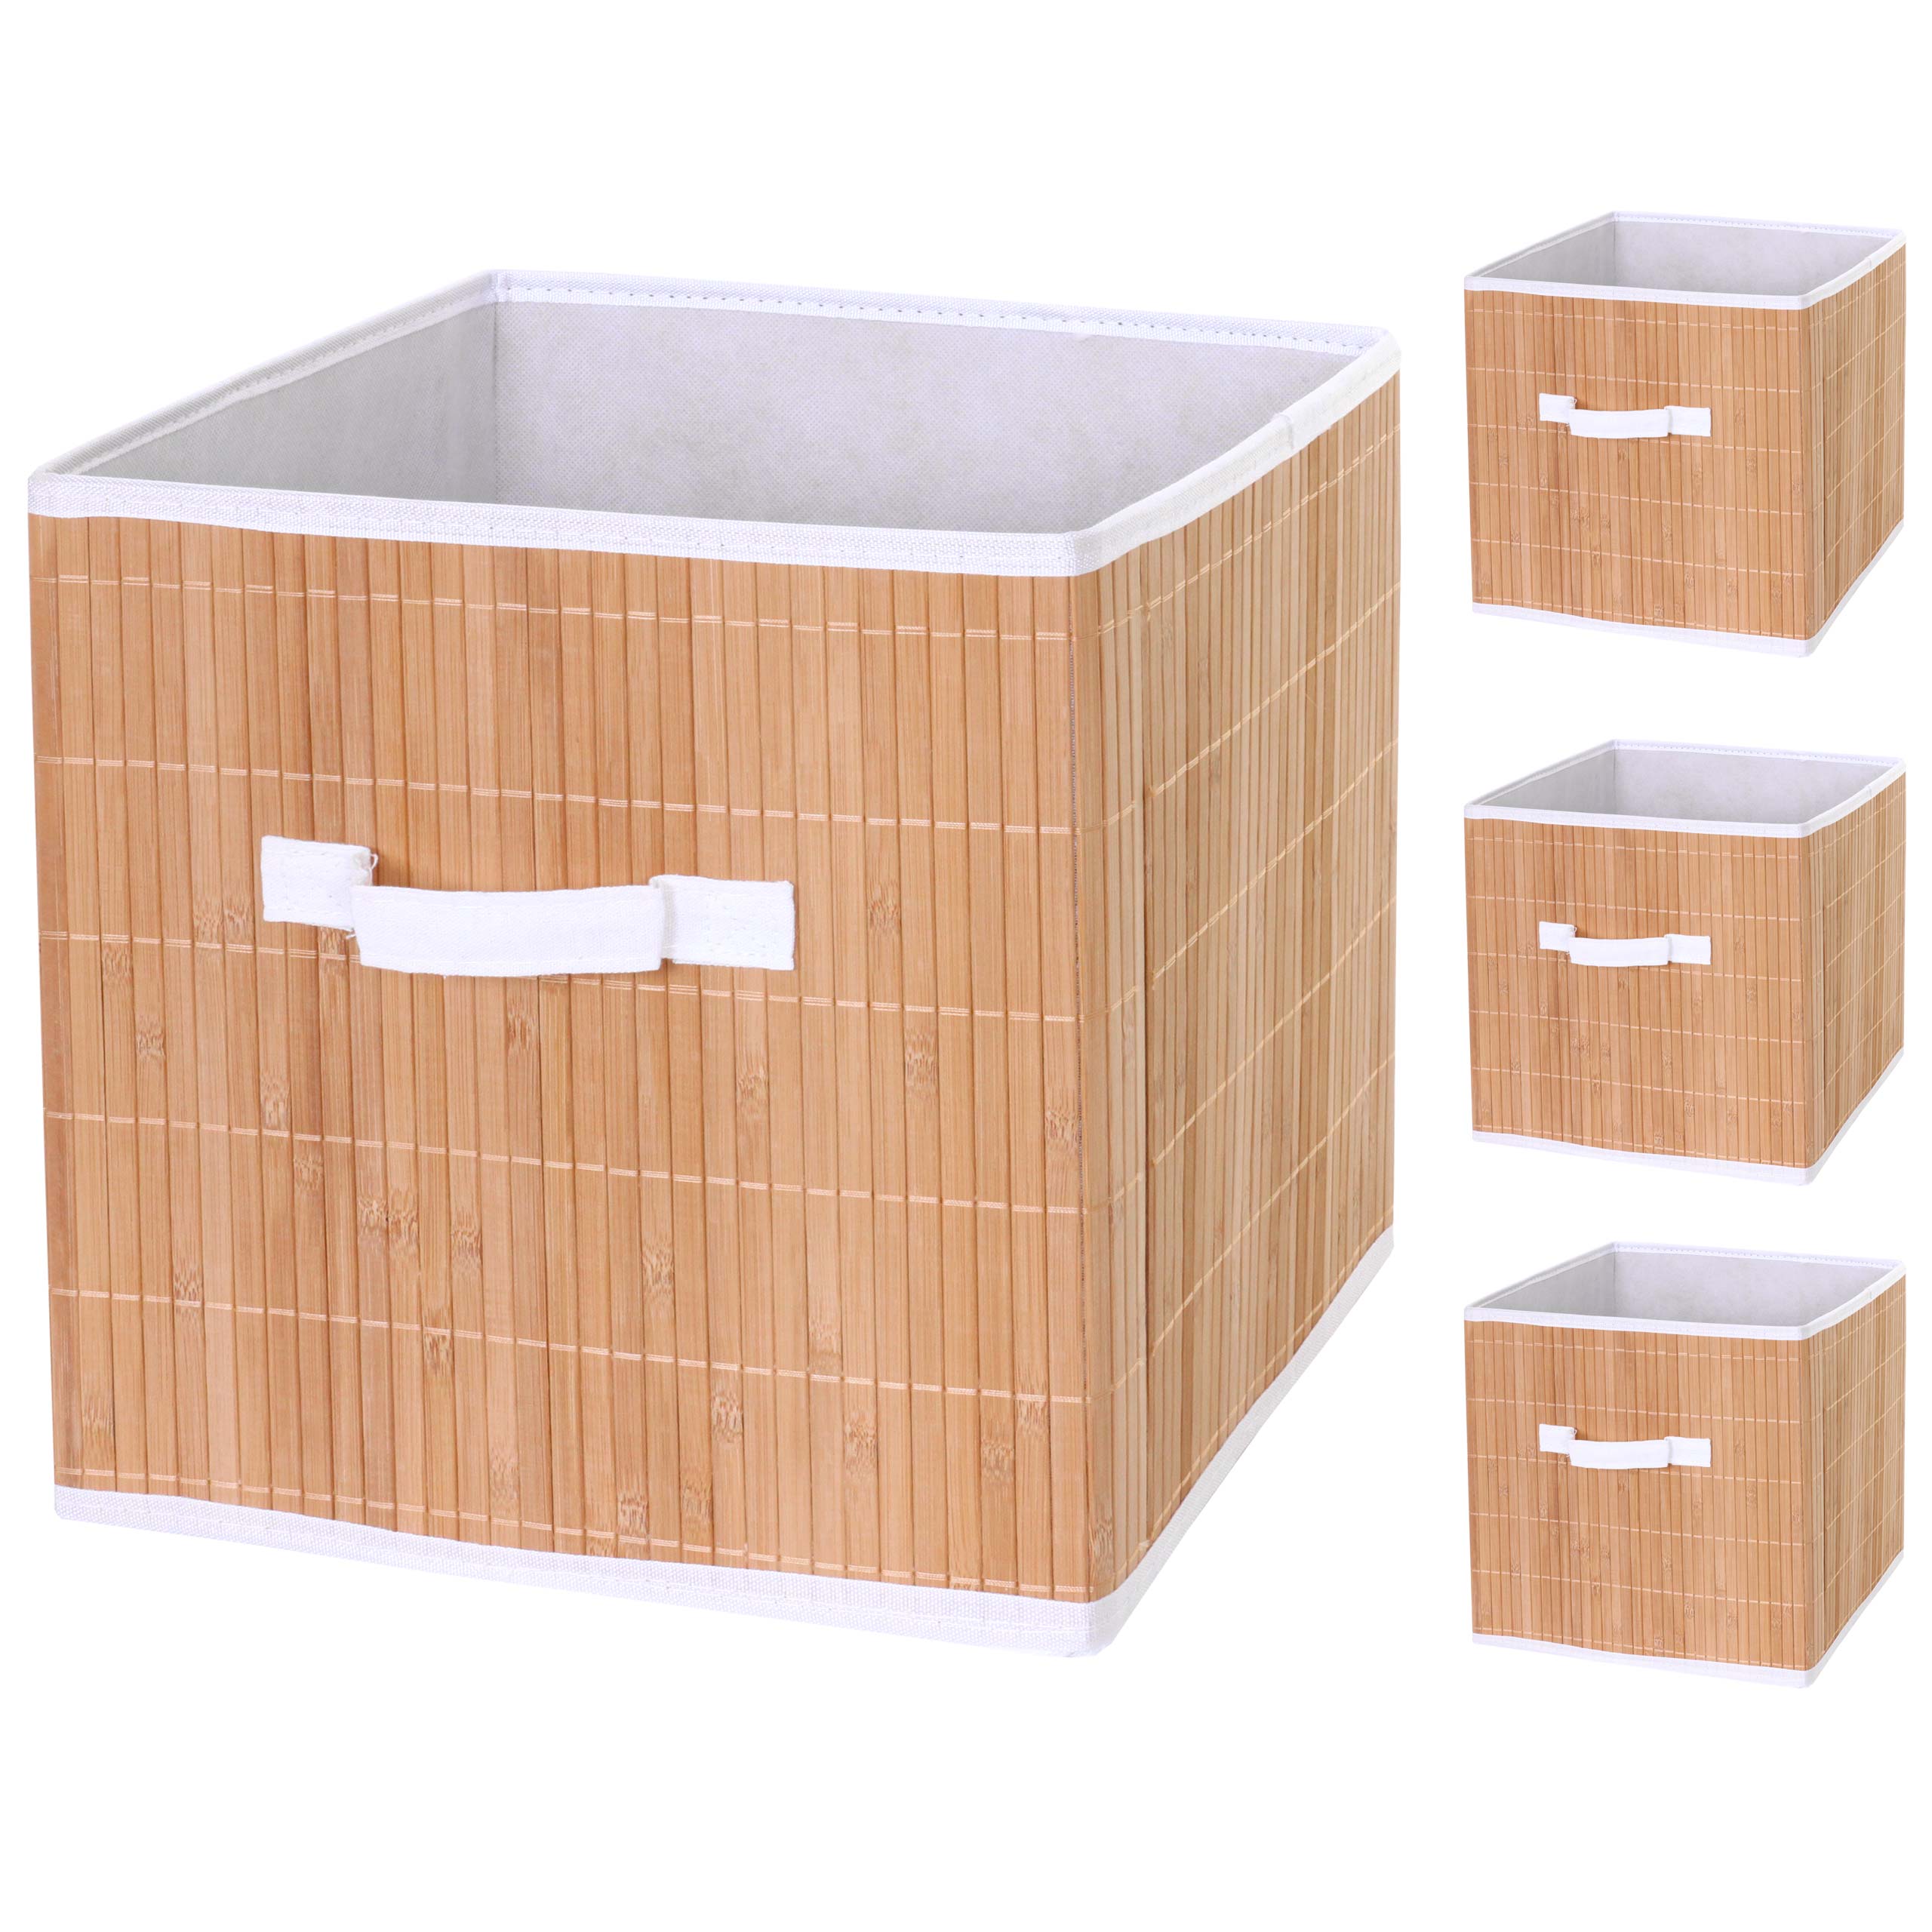 ▶️ Lecylanker caja de almacenaje ropa plegable 4 cajas